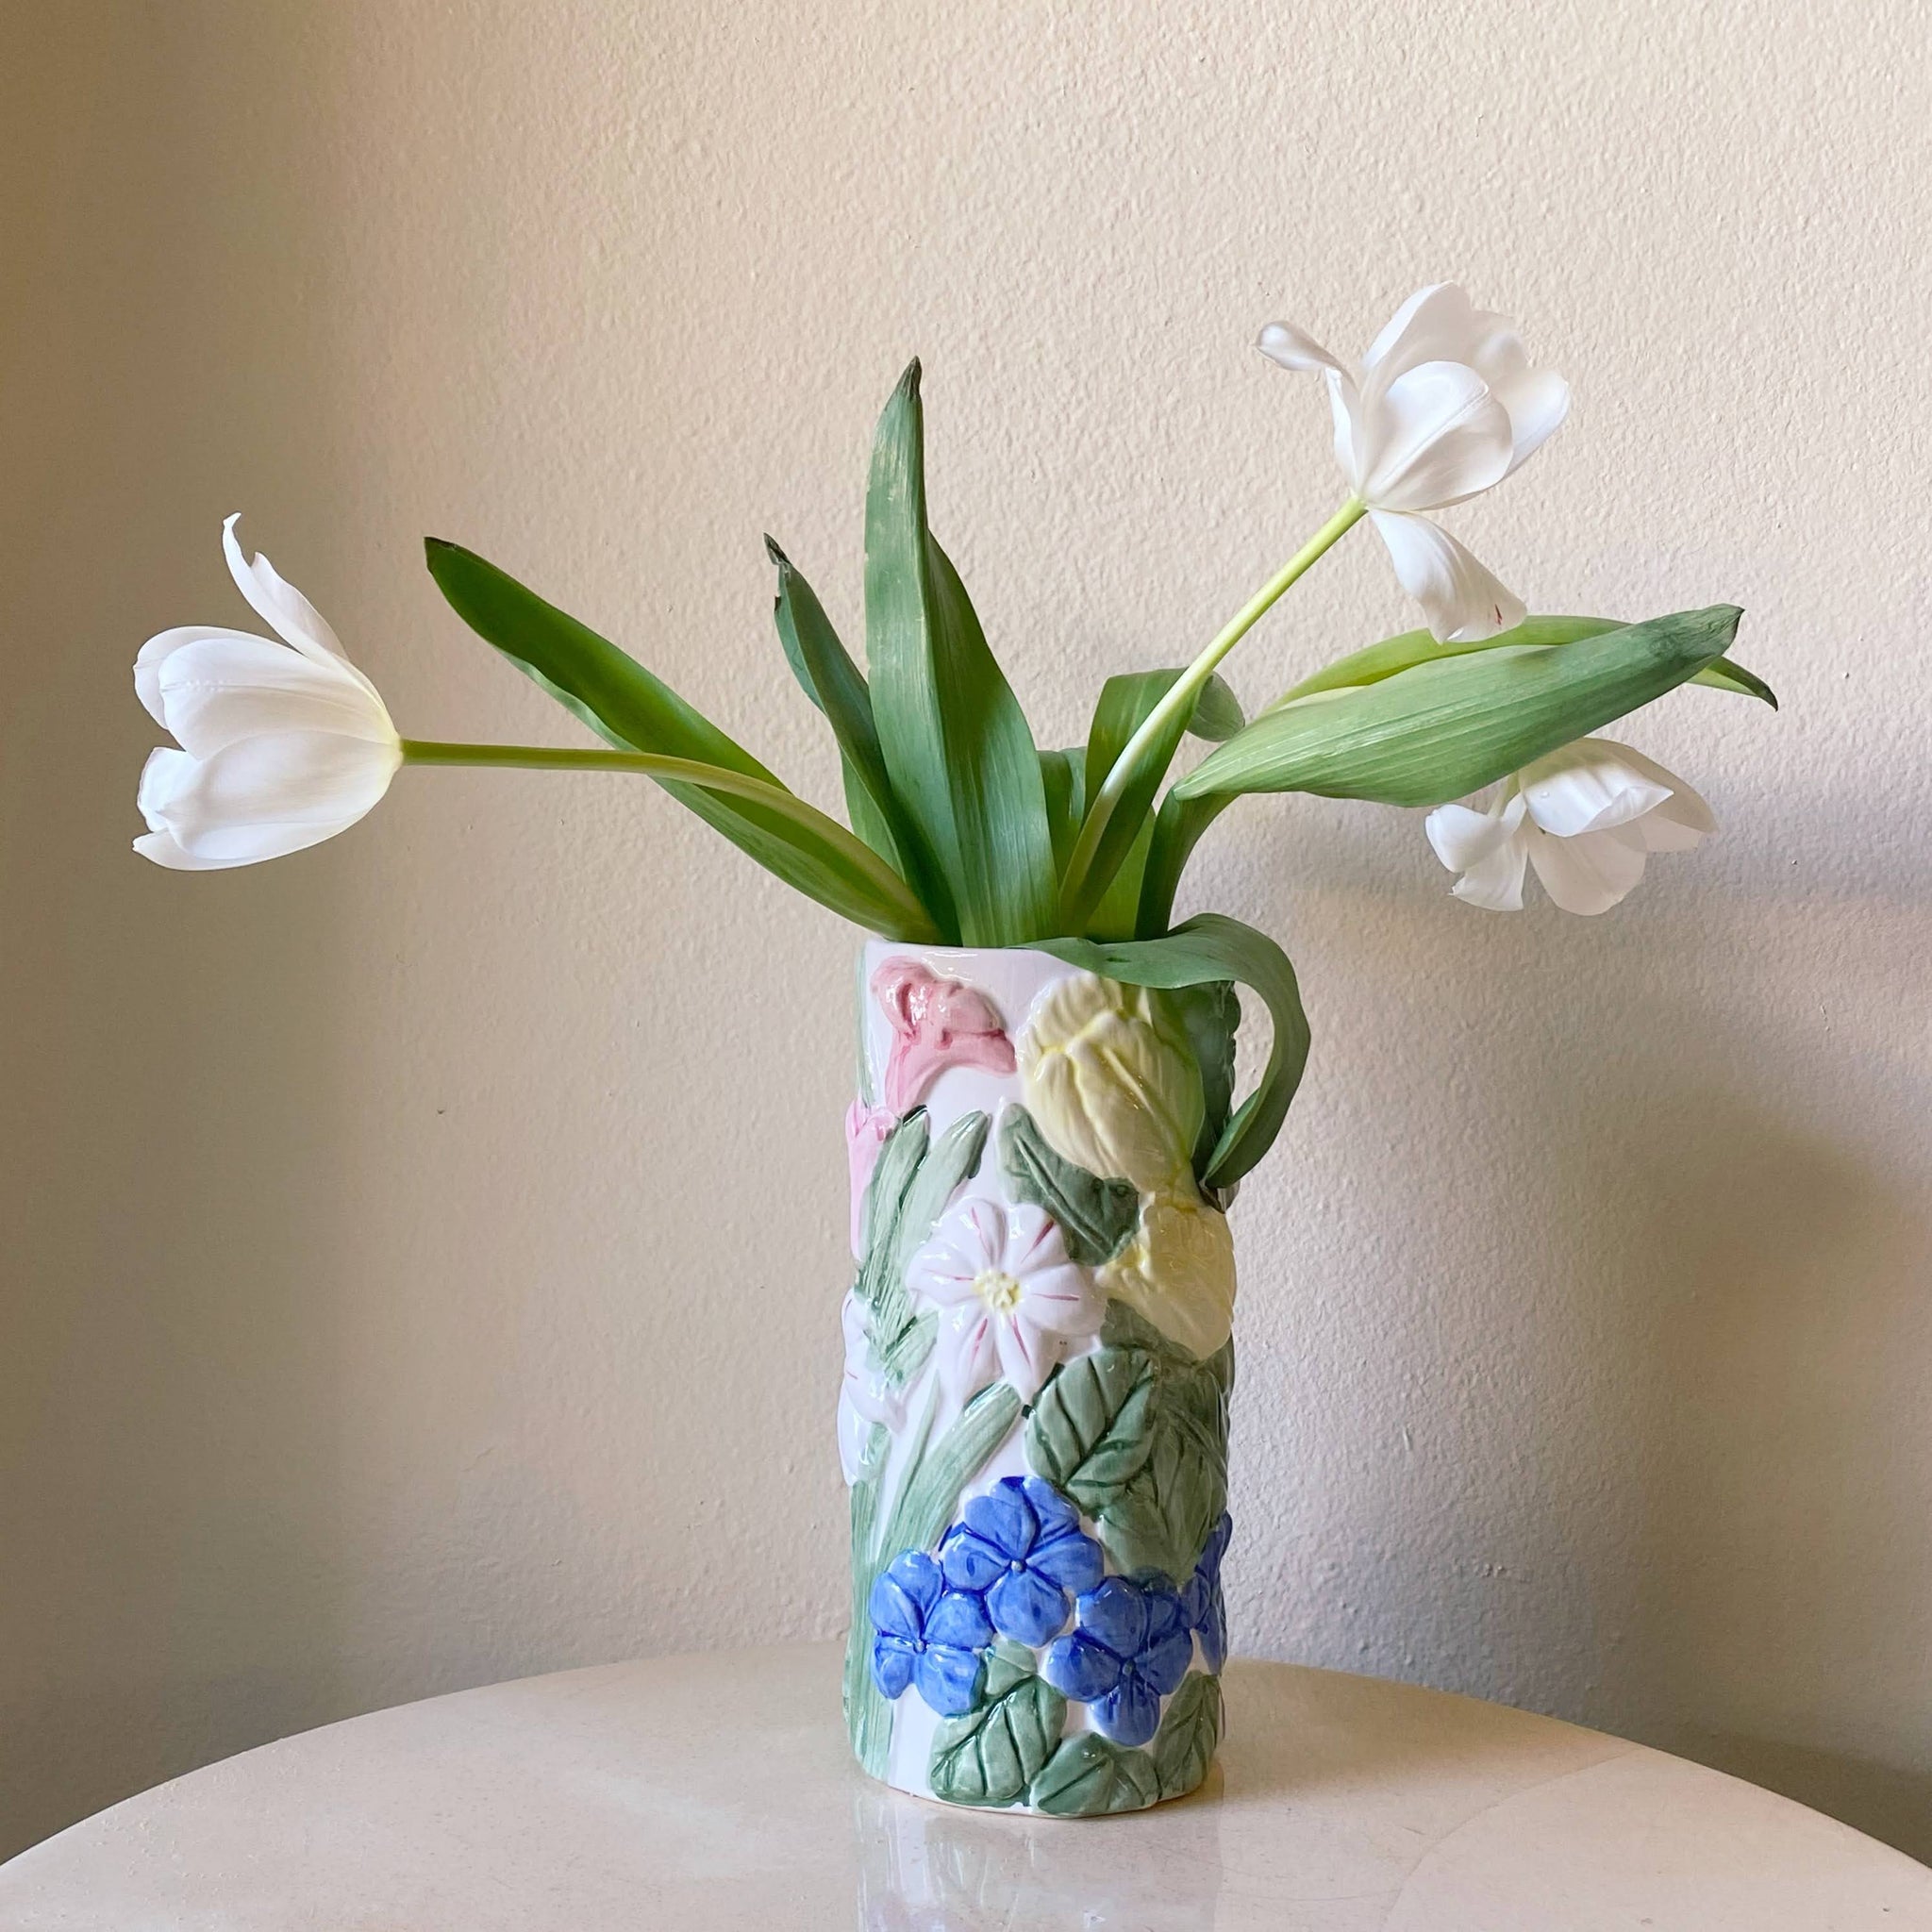 three-dimensional floral ceramic vase